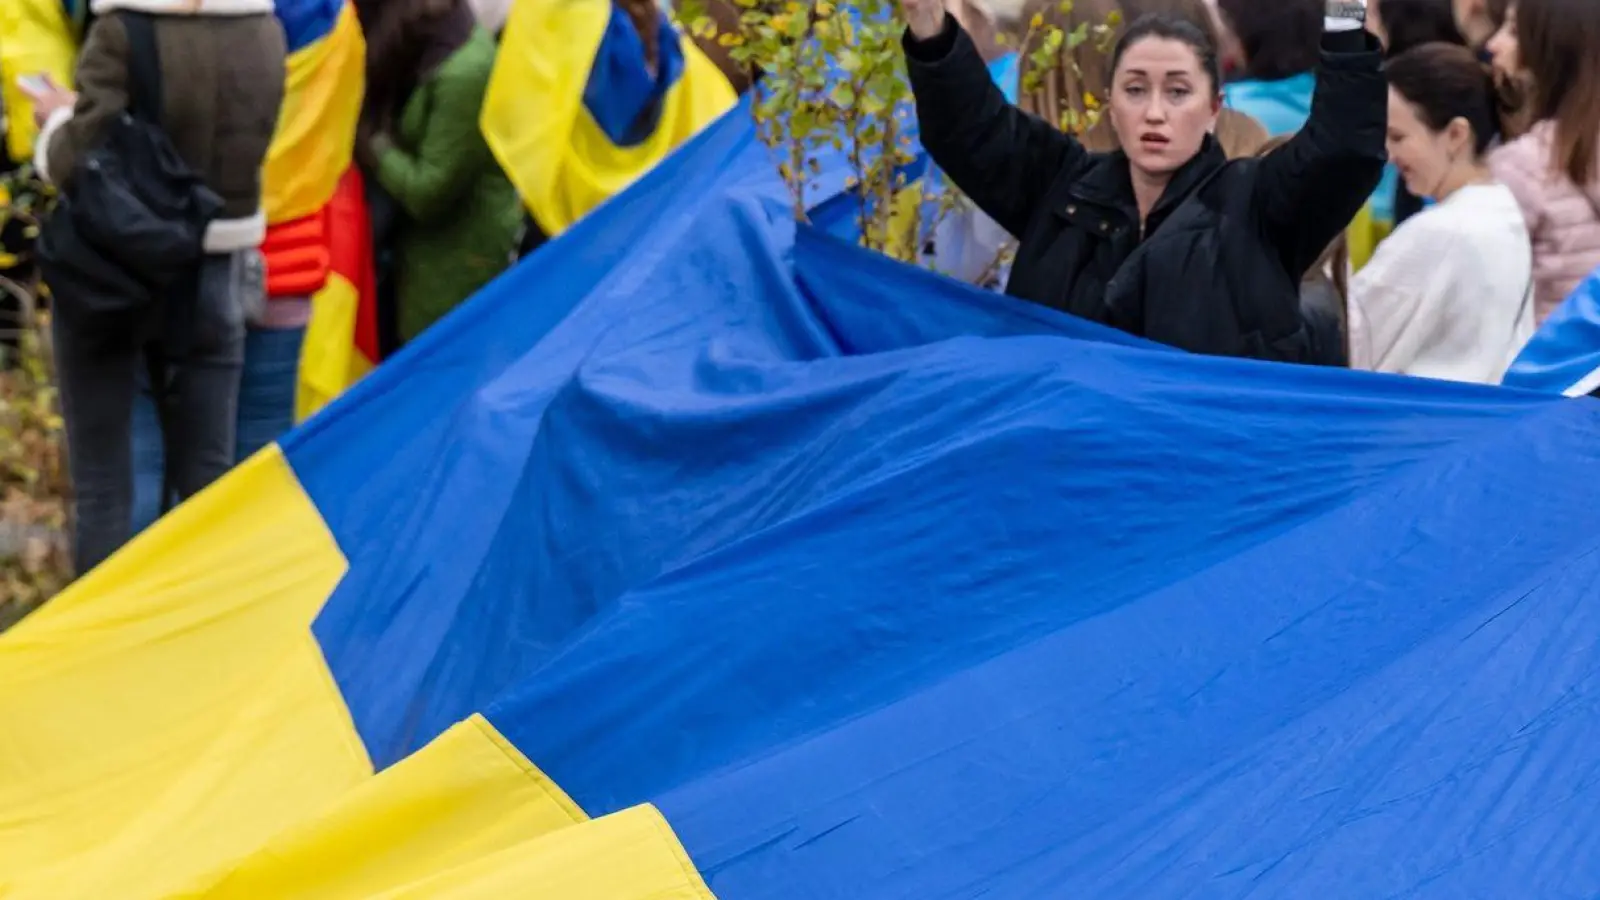 Frauen, Männer und Kinder nehmen mit Fahnen und Transparenten an einer spontanen Kundgebung vor der bayerischen Staatskanzlei angesichts der Lage in der Ukraine teil. (Foto: Peter Kneffel/Deutsche Presse-Agentur GmbH/dpa/Archivbild)